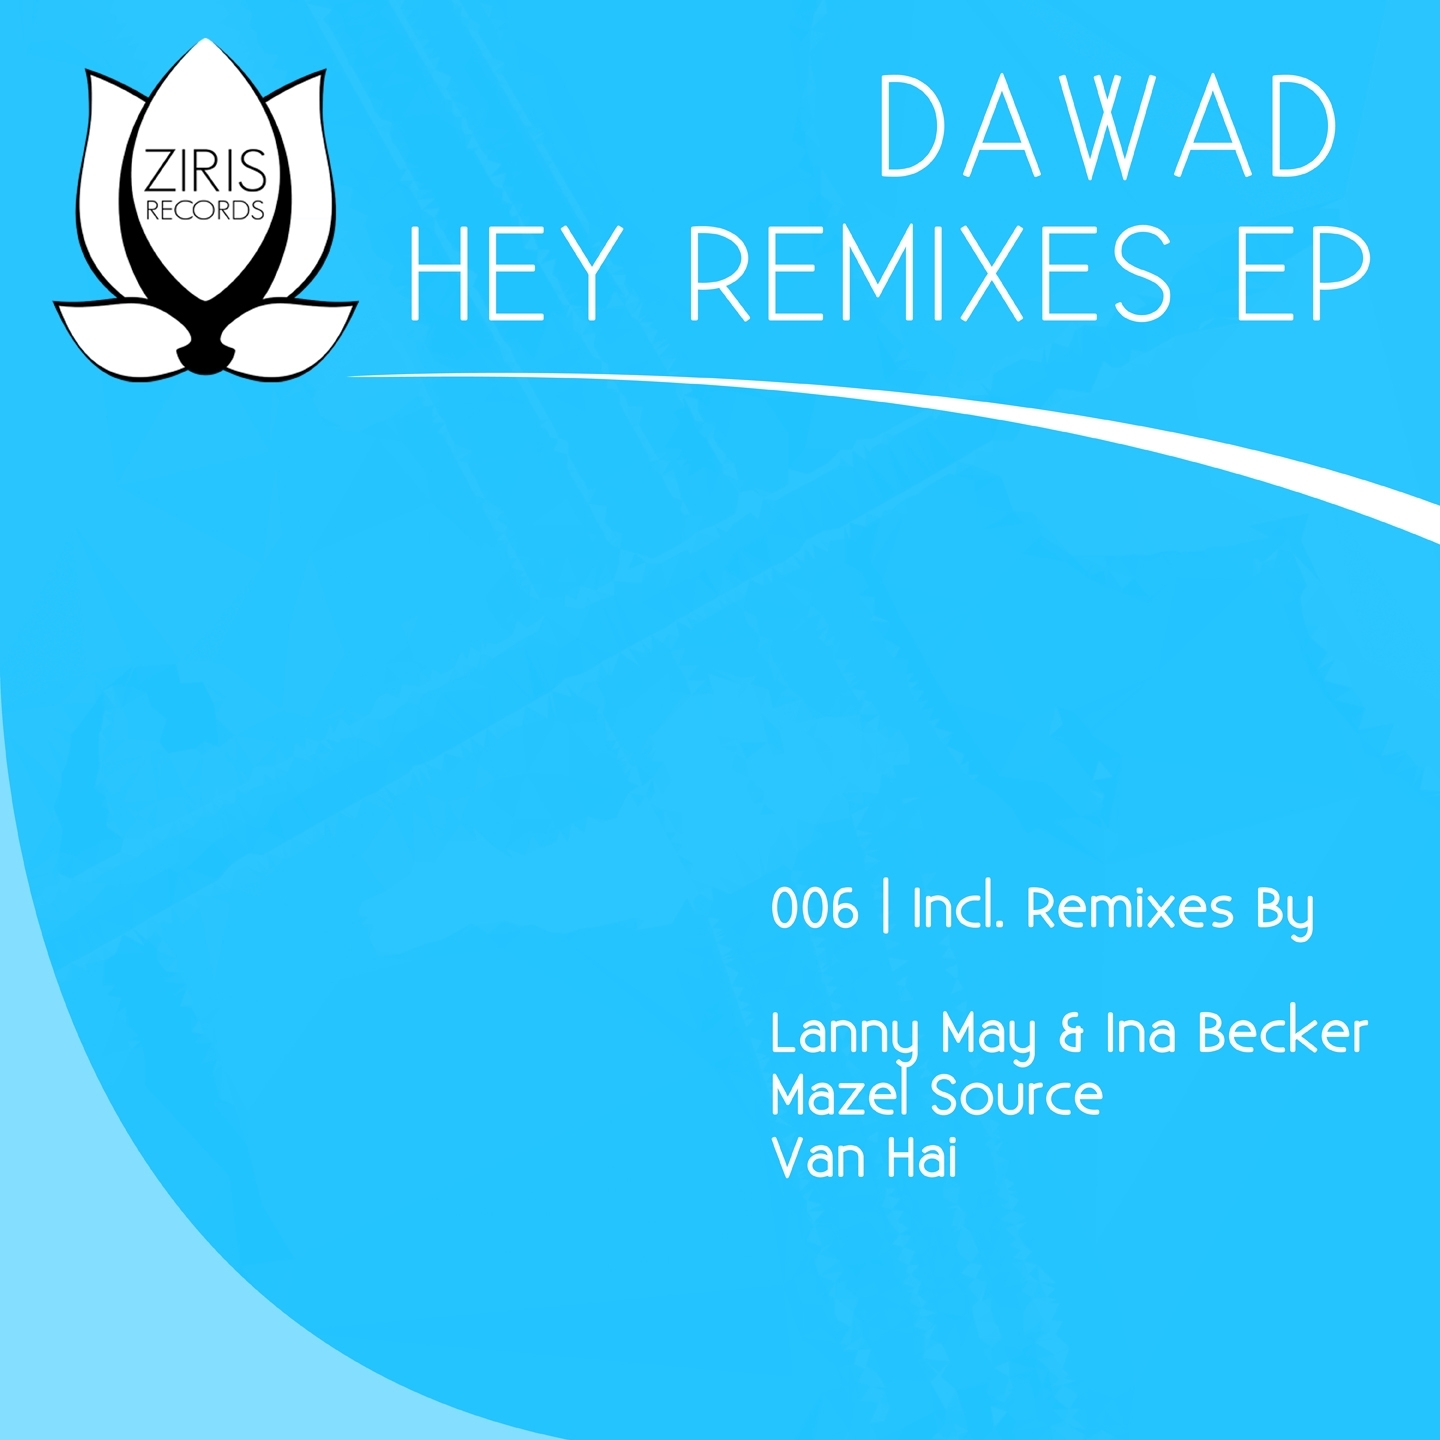 Hey Remixes EP